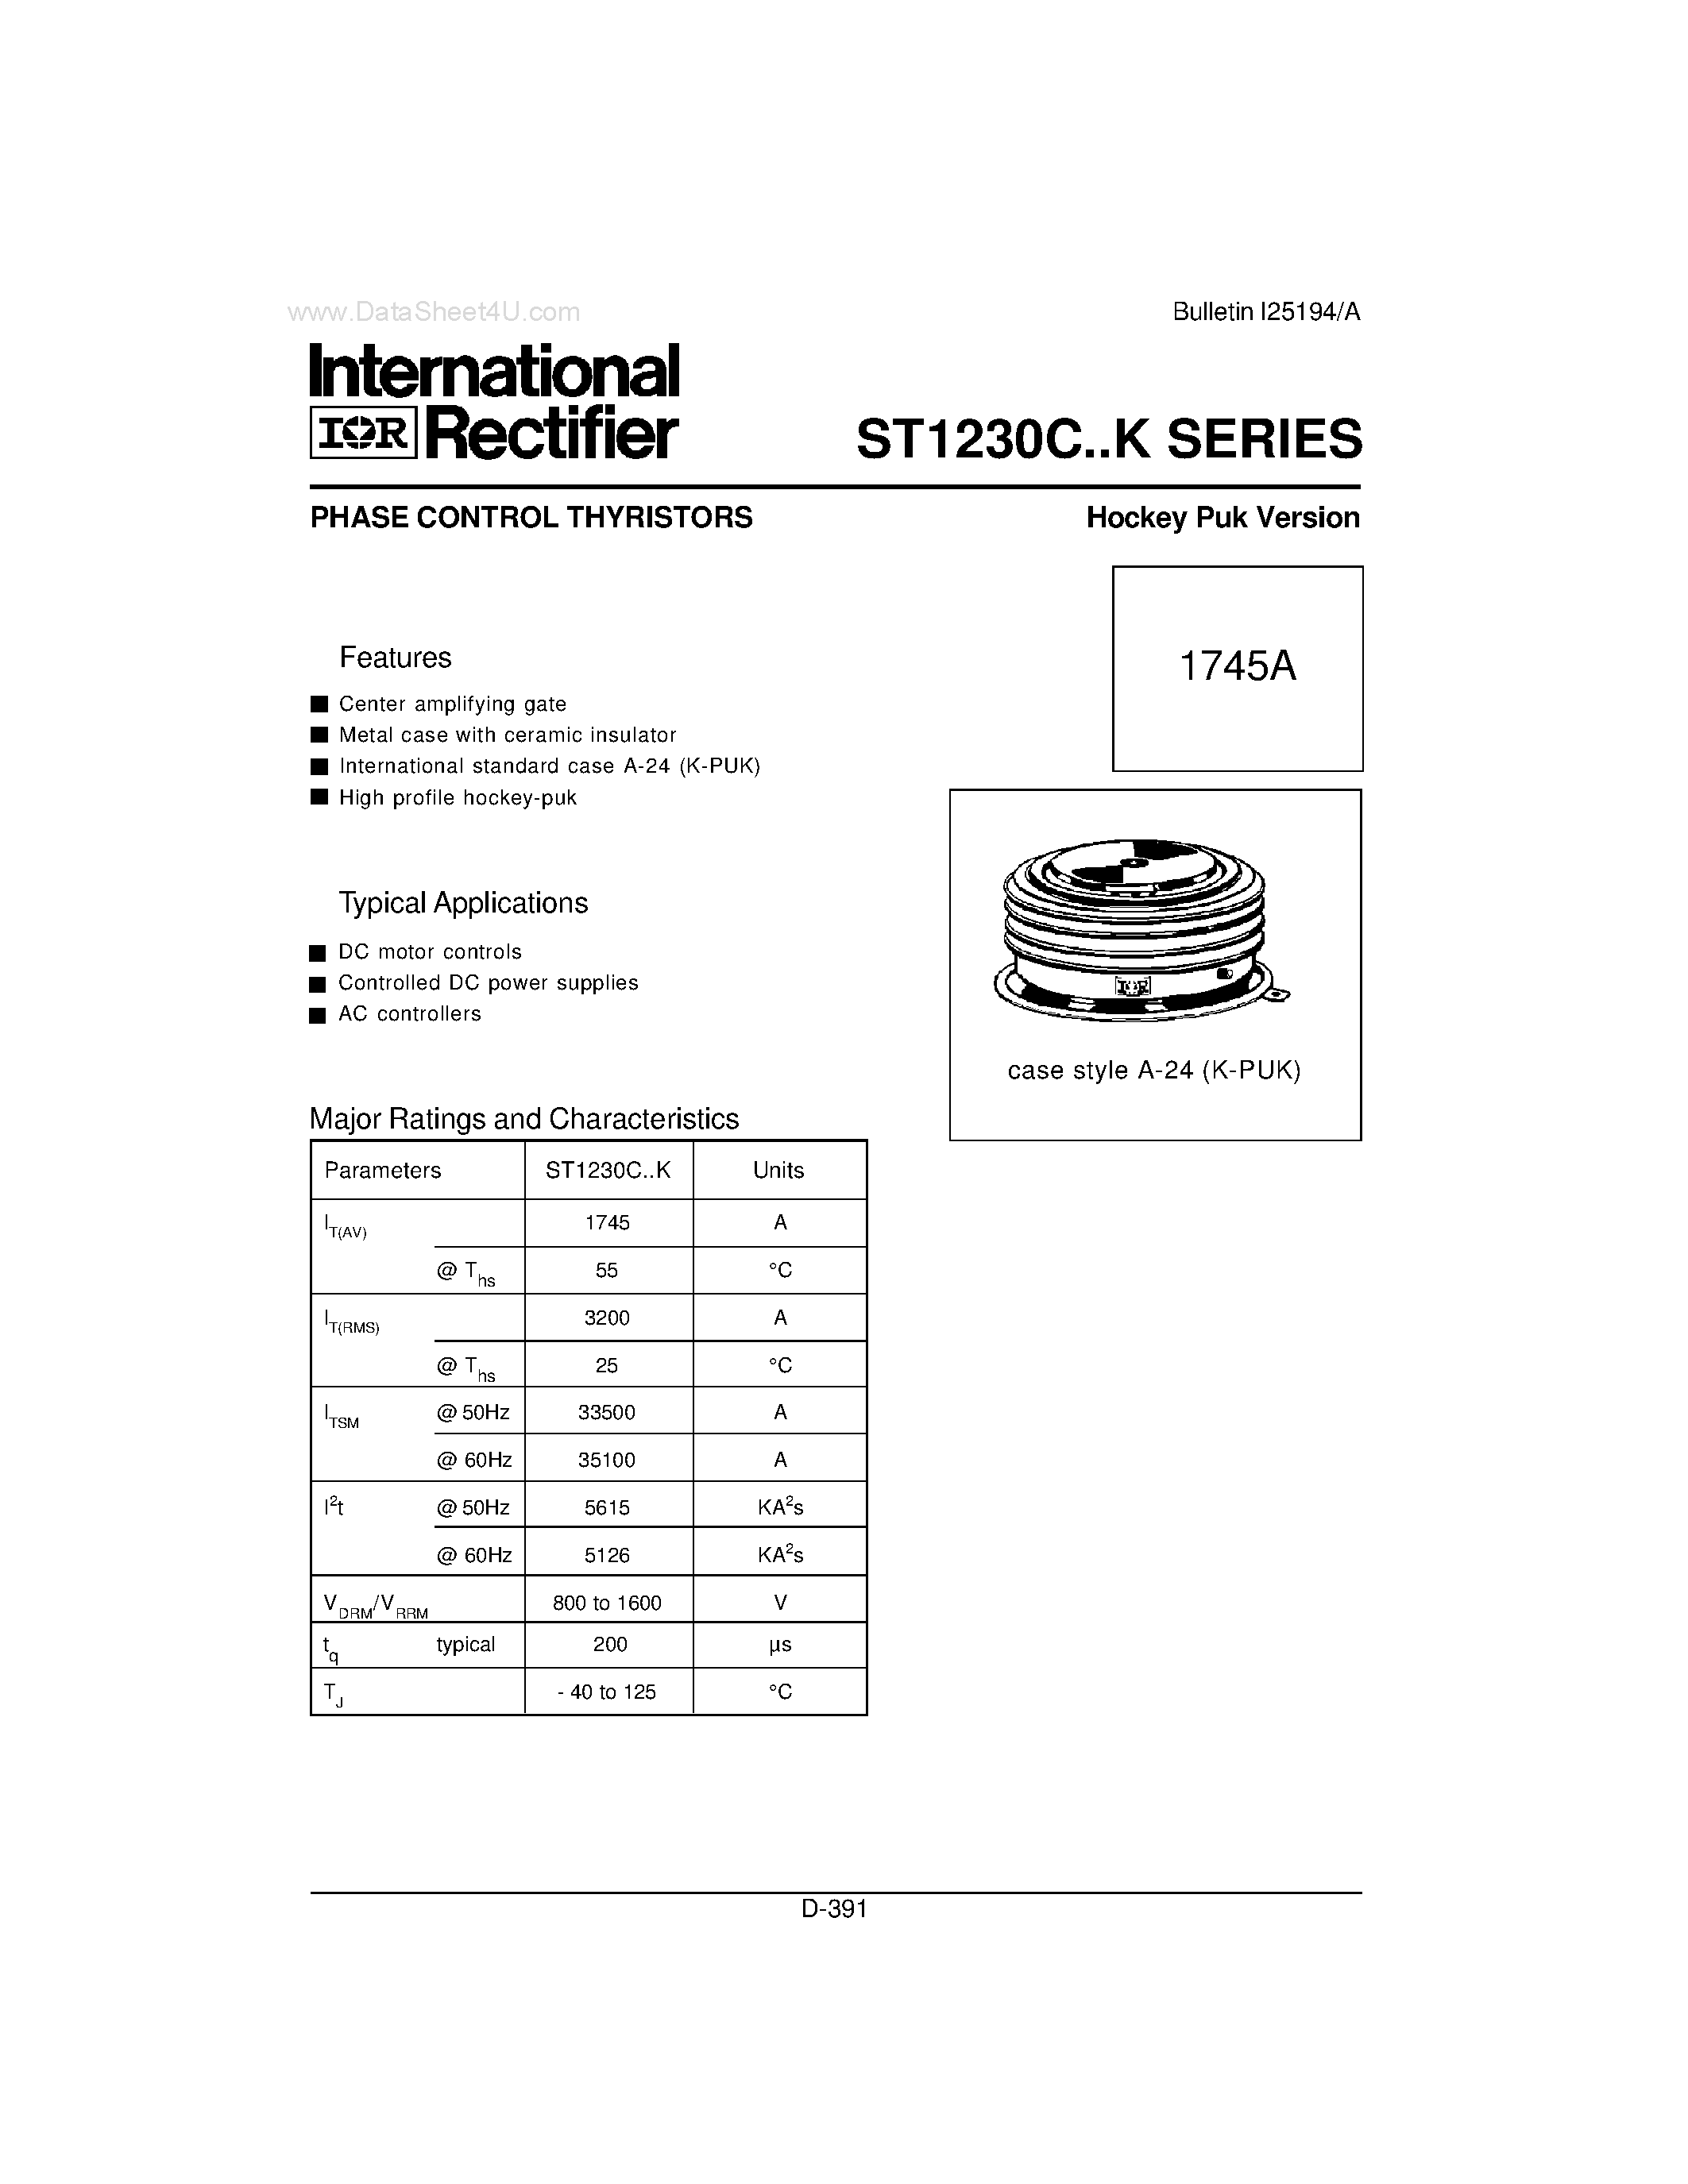 Datasheet ST1230C - PHASE CONTROL THYRISTORS Hockey Puk Version page 1